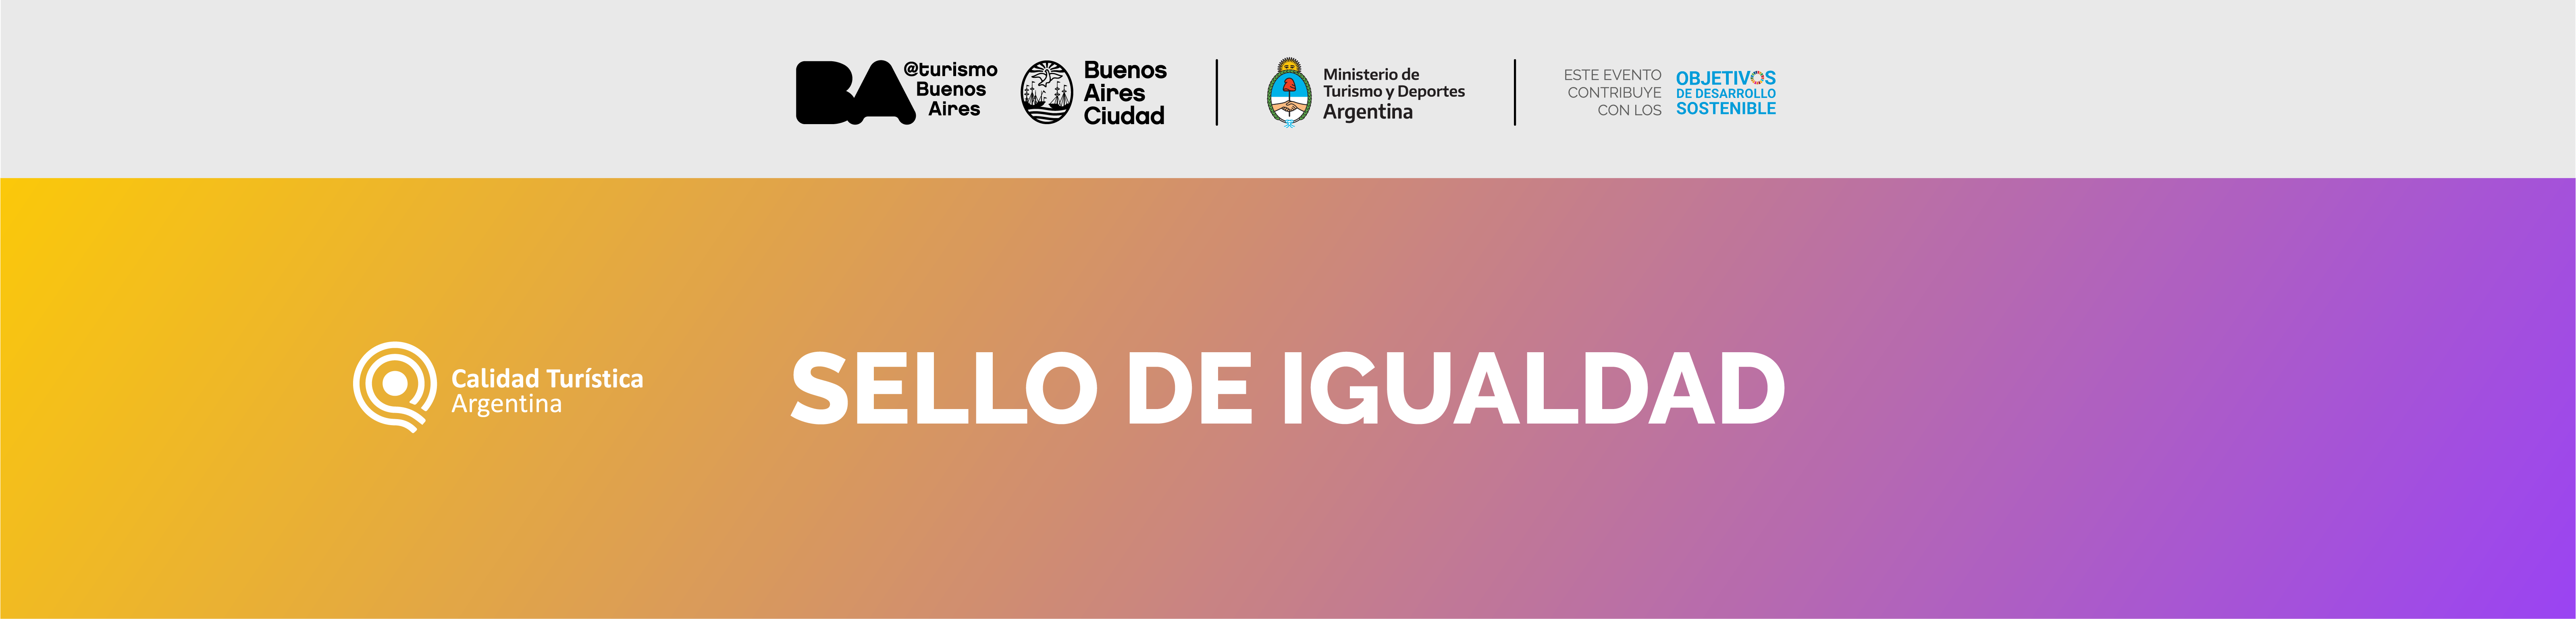 Sello Igualdad: 16 organizaciones turísticas distinguidas en la Ciudad de Buenos Aires